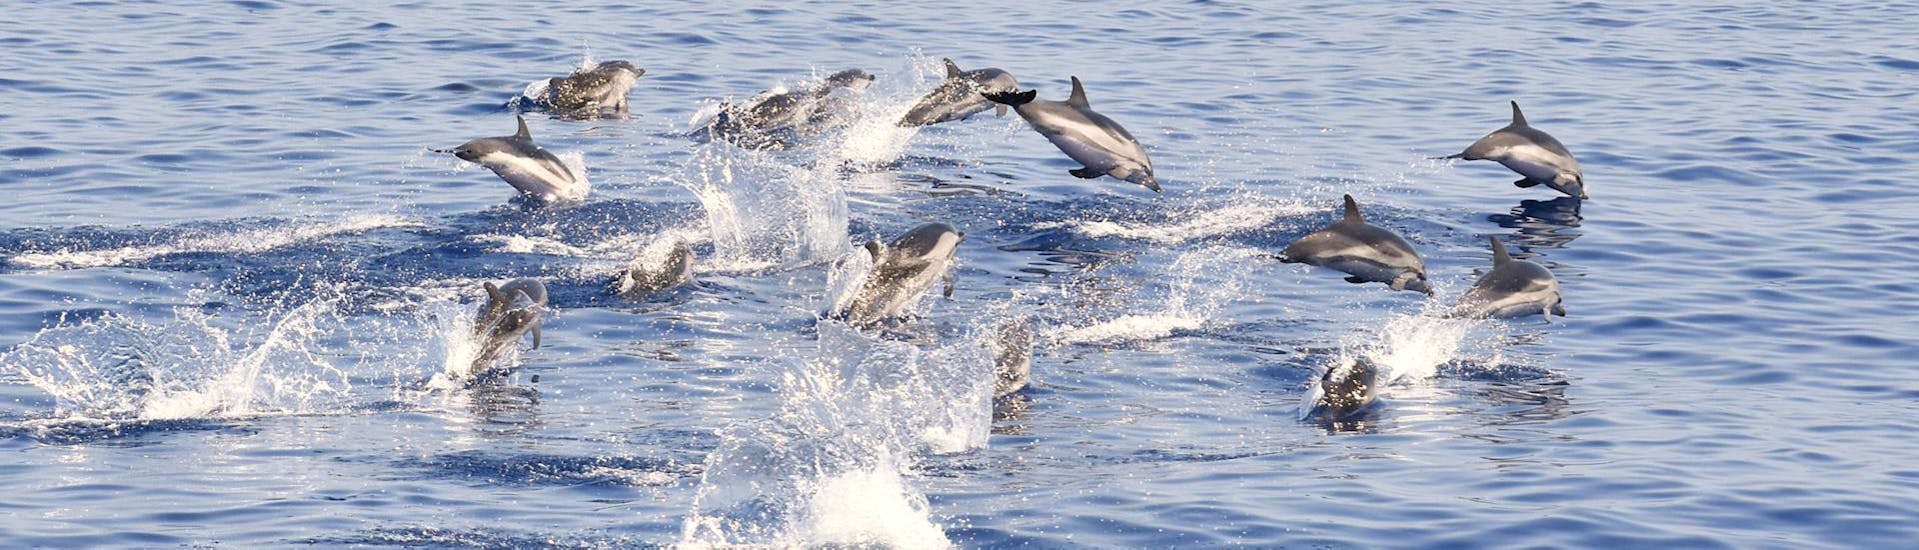 Algunos delfines avistados durante la excursión en barco desde Savona al Santuario de Pelagos con avistamiento de cetáceos con BMC Yacht.